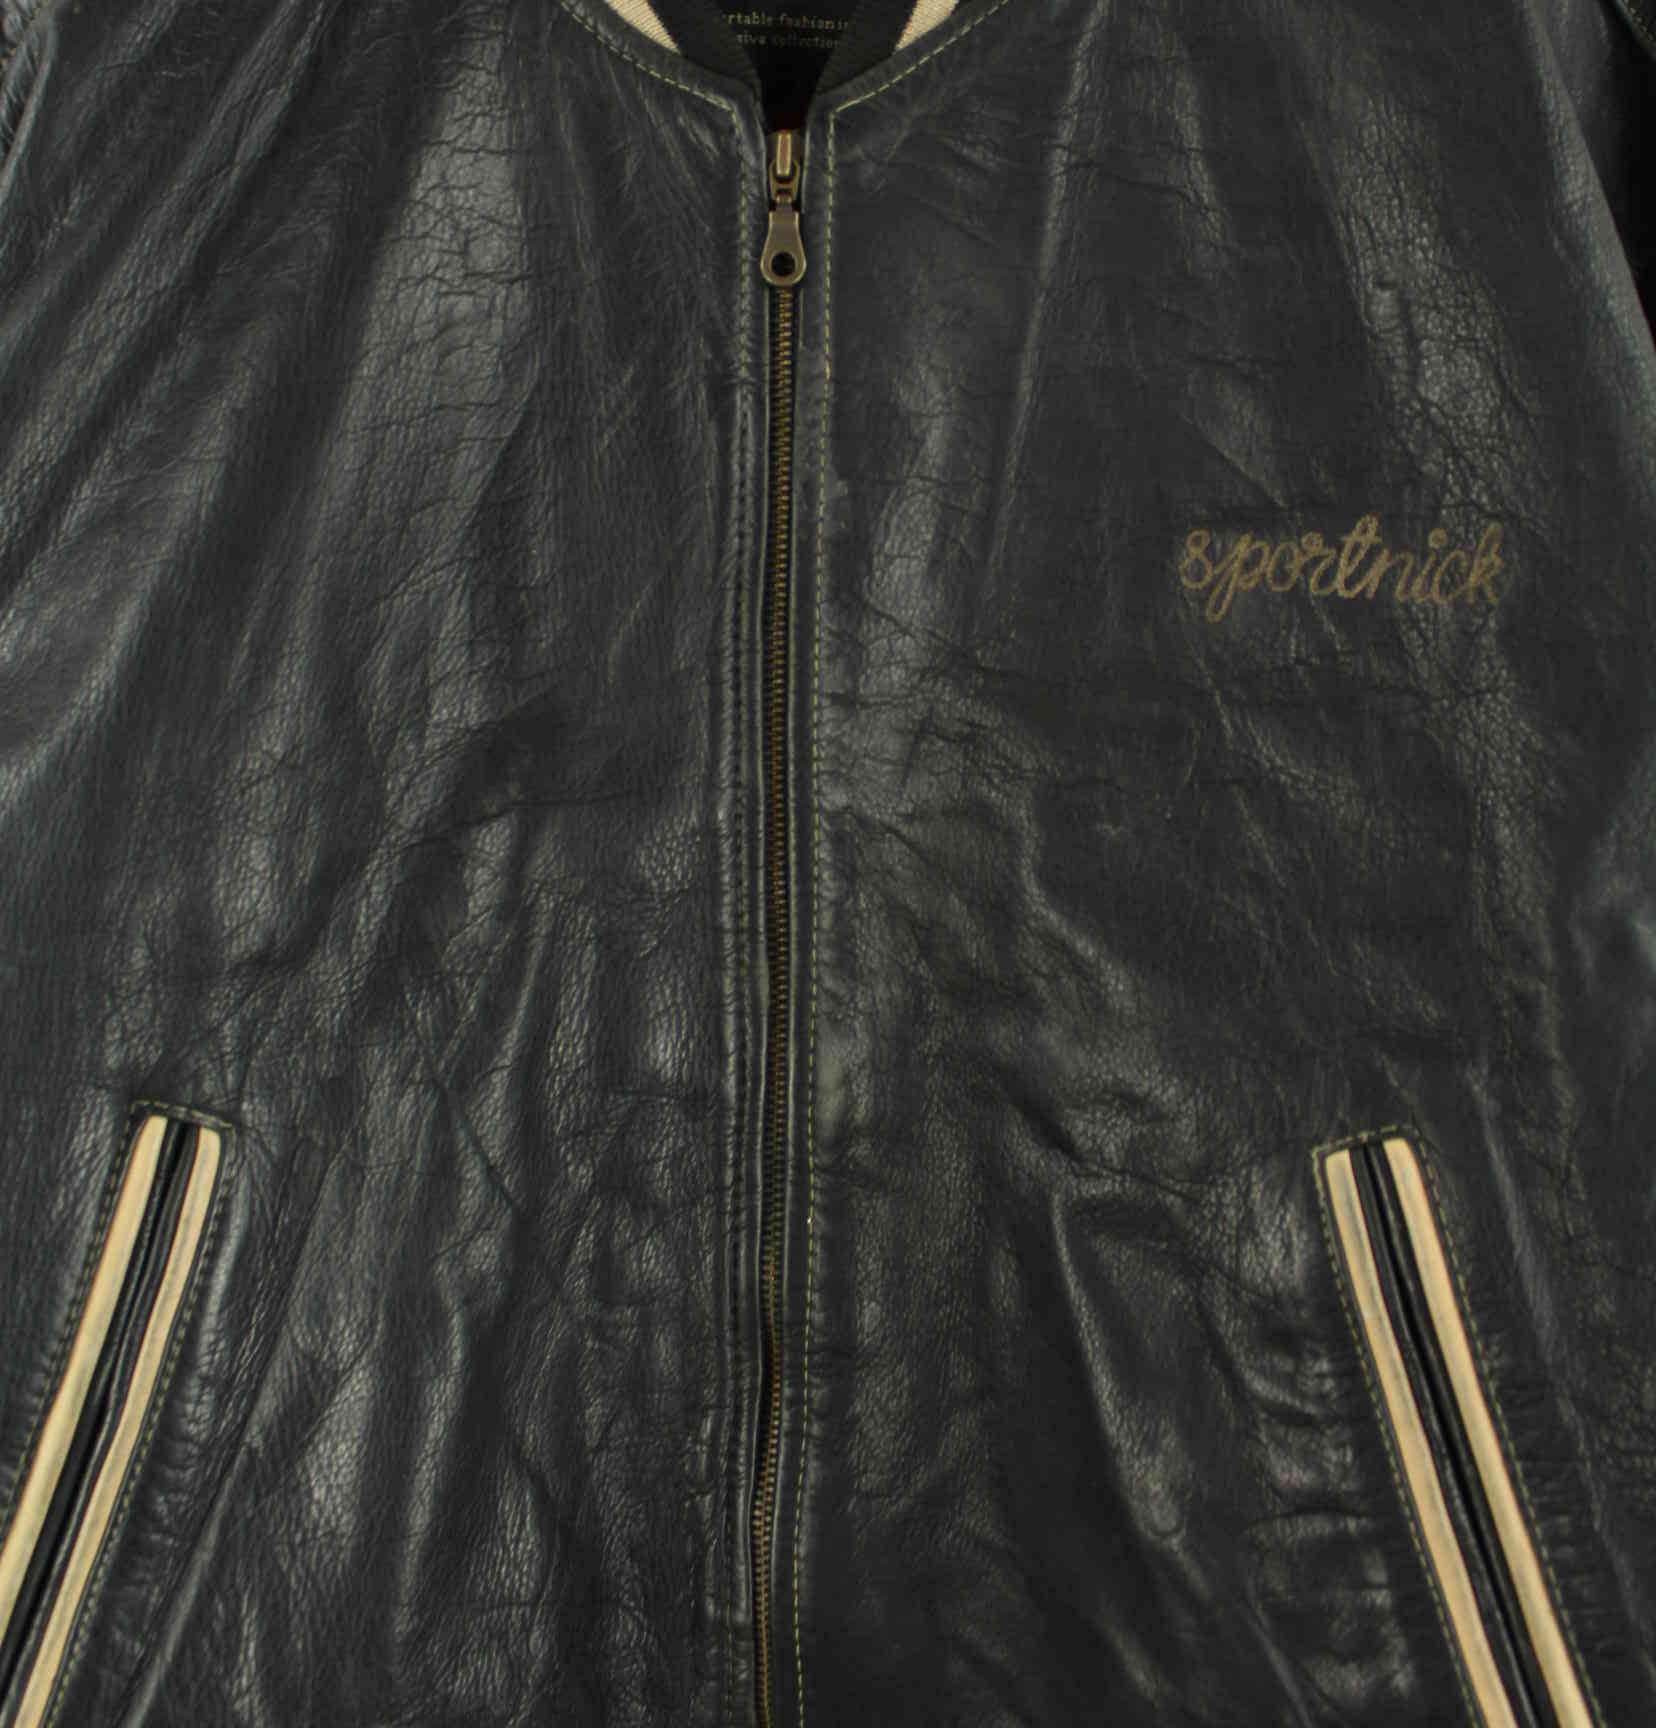 Vintage 90s Sportnick Embroidered Leder Jacke Schwarz XL (detail image 1)